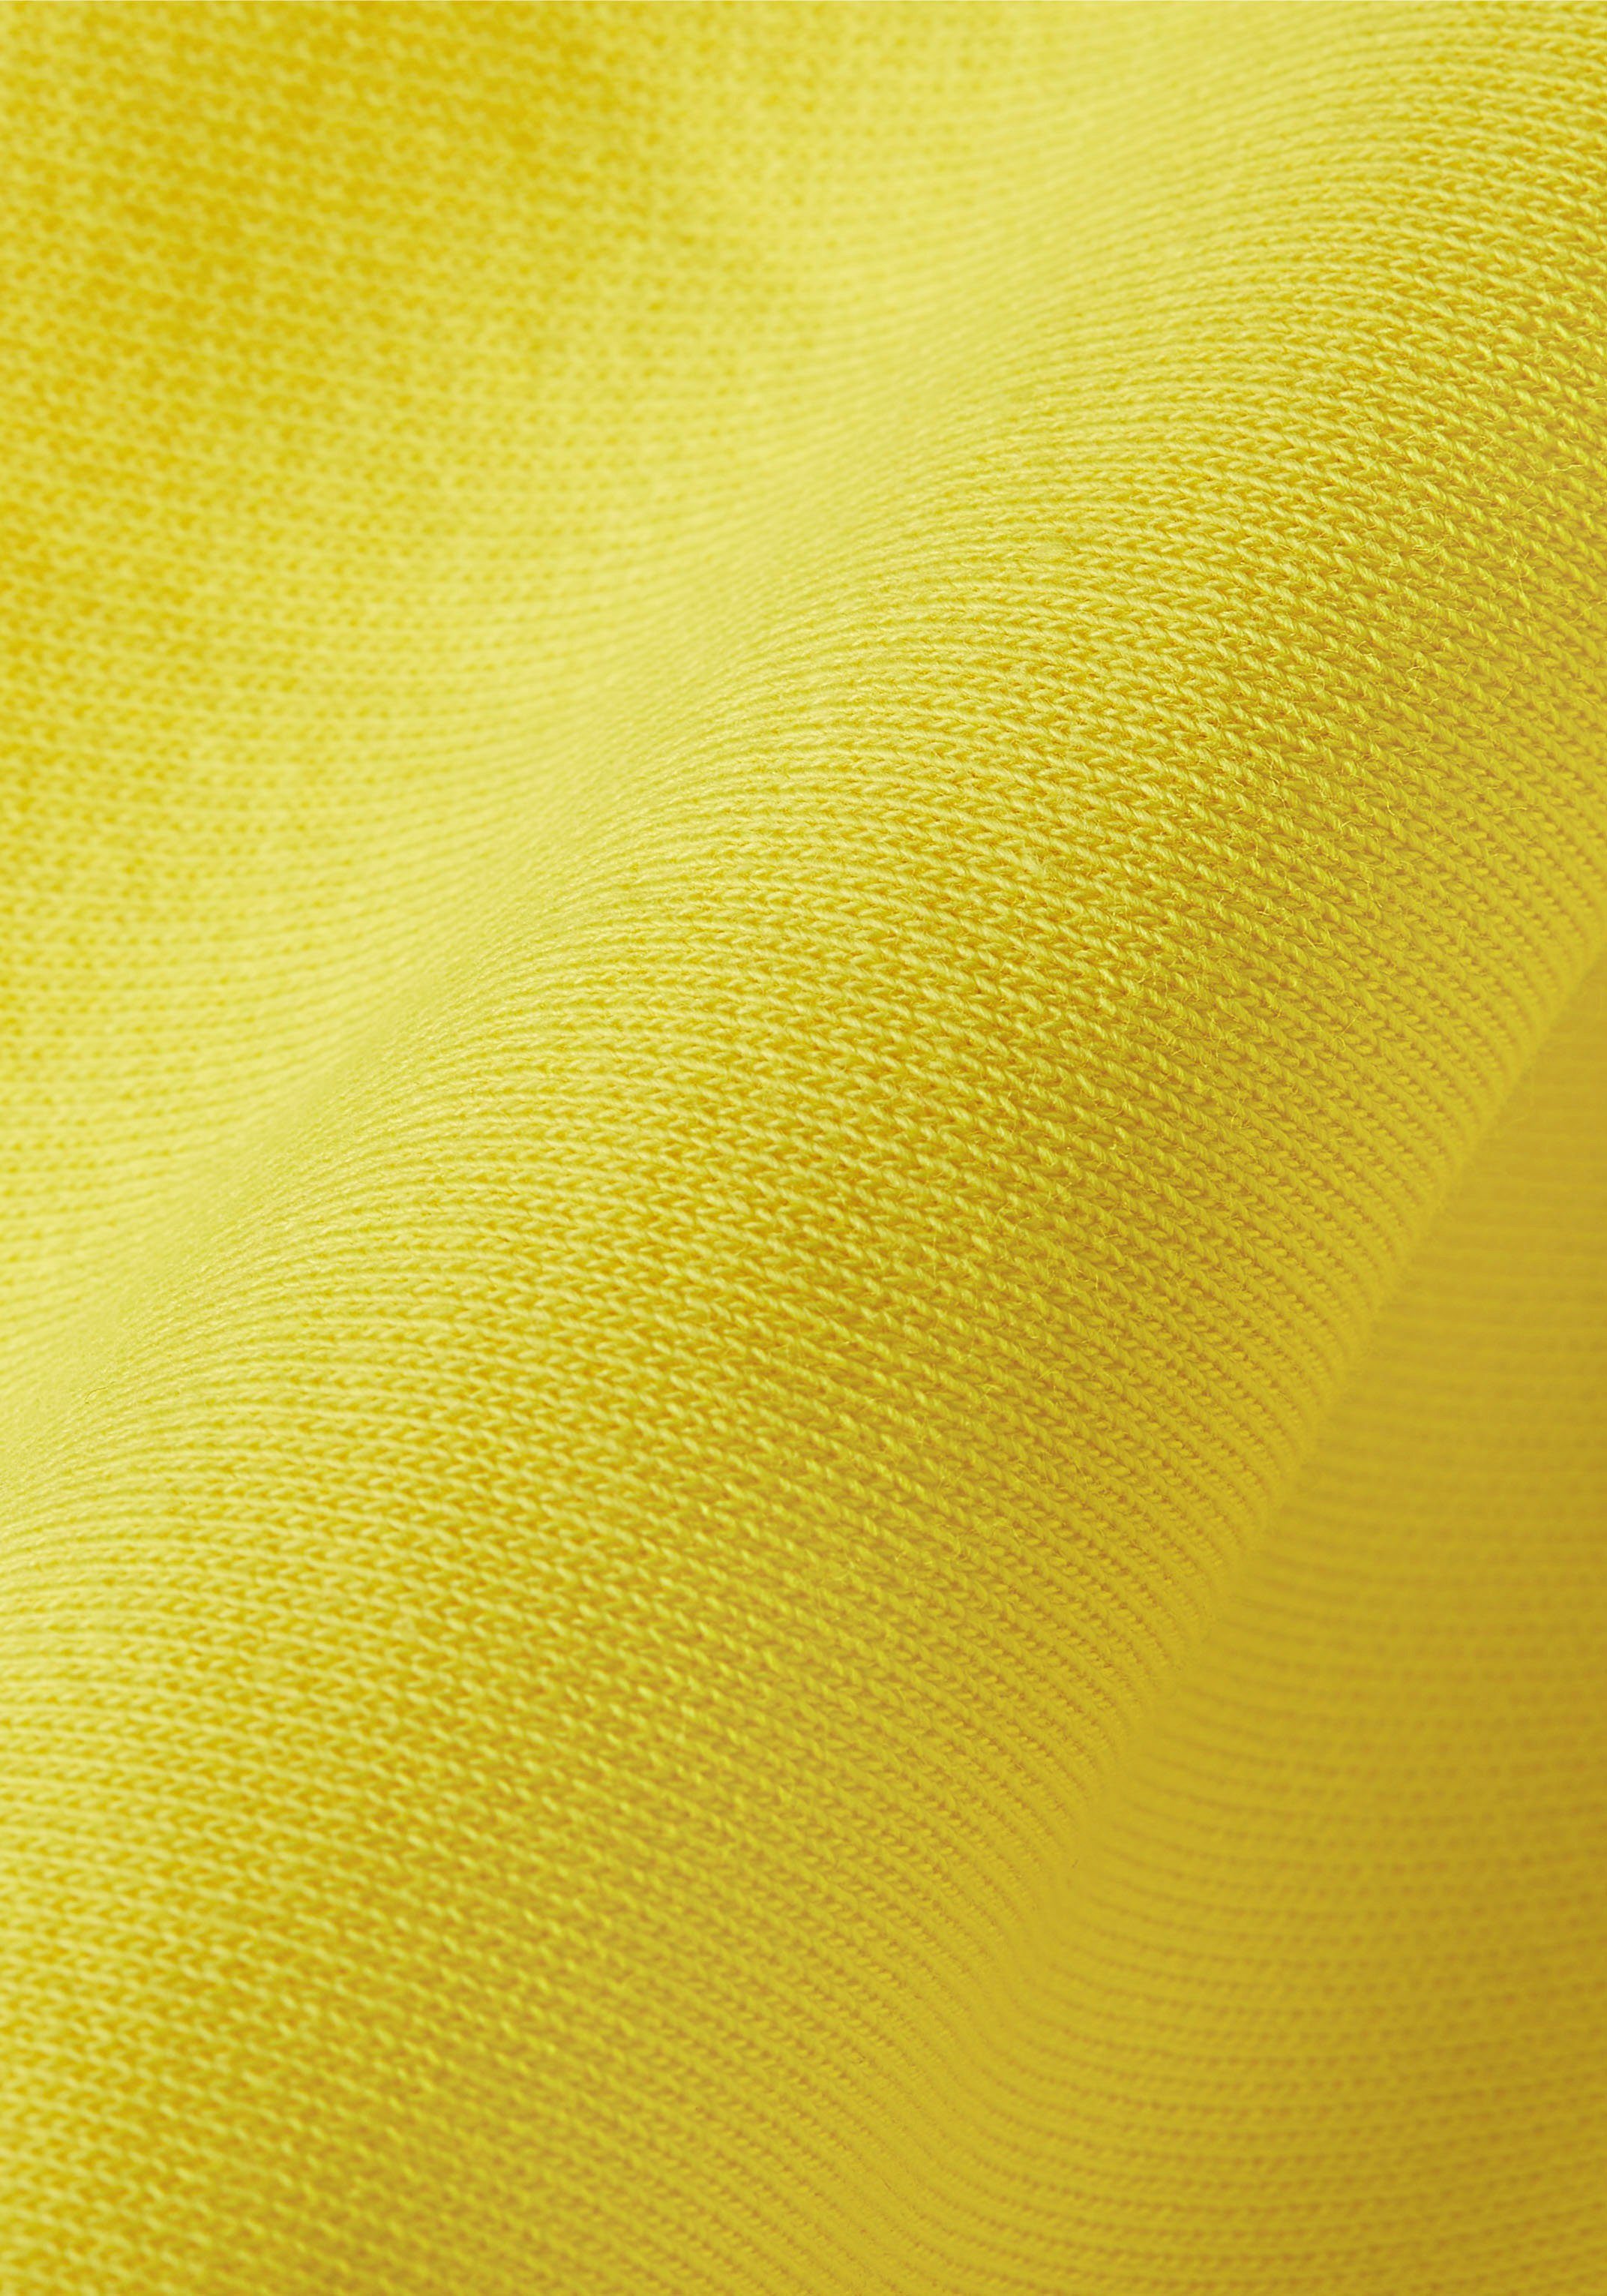 TOMMY der Kapuzensweatshirt Brust auf Tommy TH-Schriftzug Yellow mit LOGO Hilfiger HOODY gesticktem Vivid